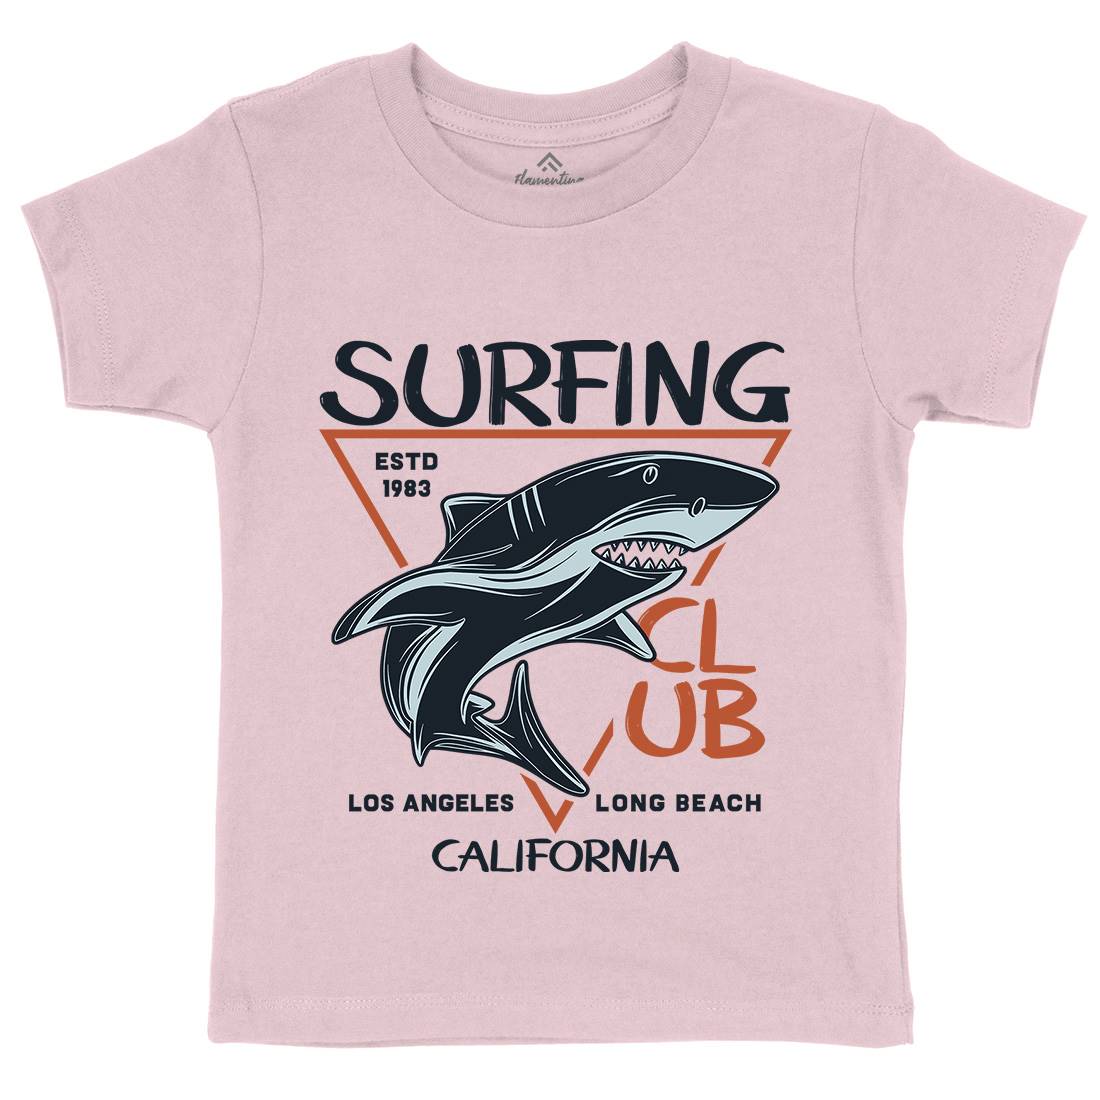 Shark Surfing Club Kids Crew Neck T-Shirt Navy D968